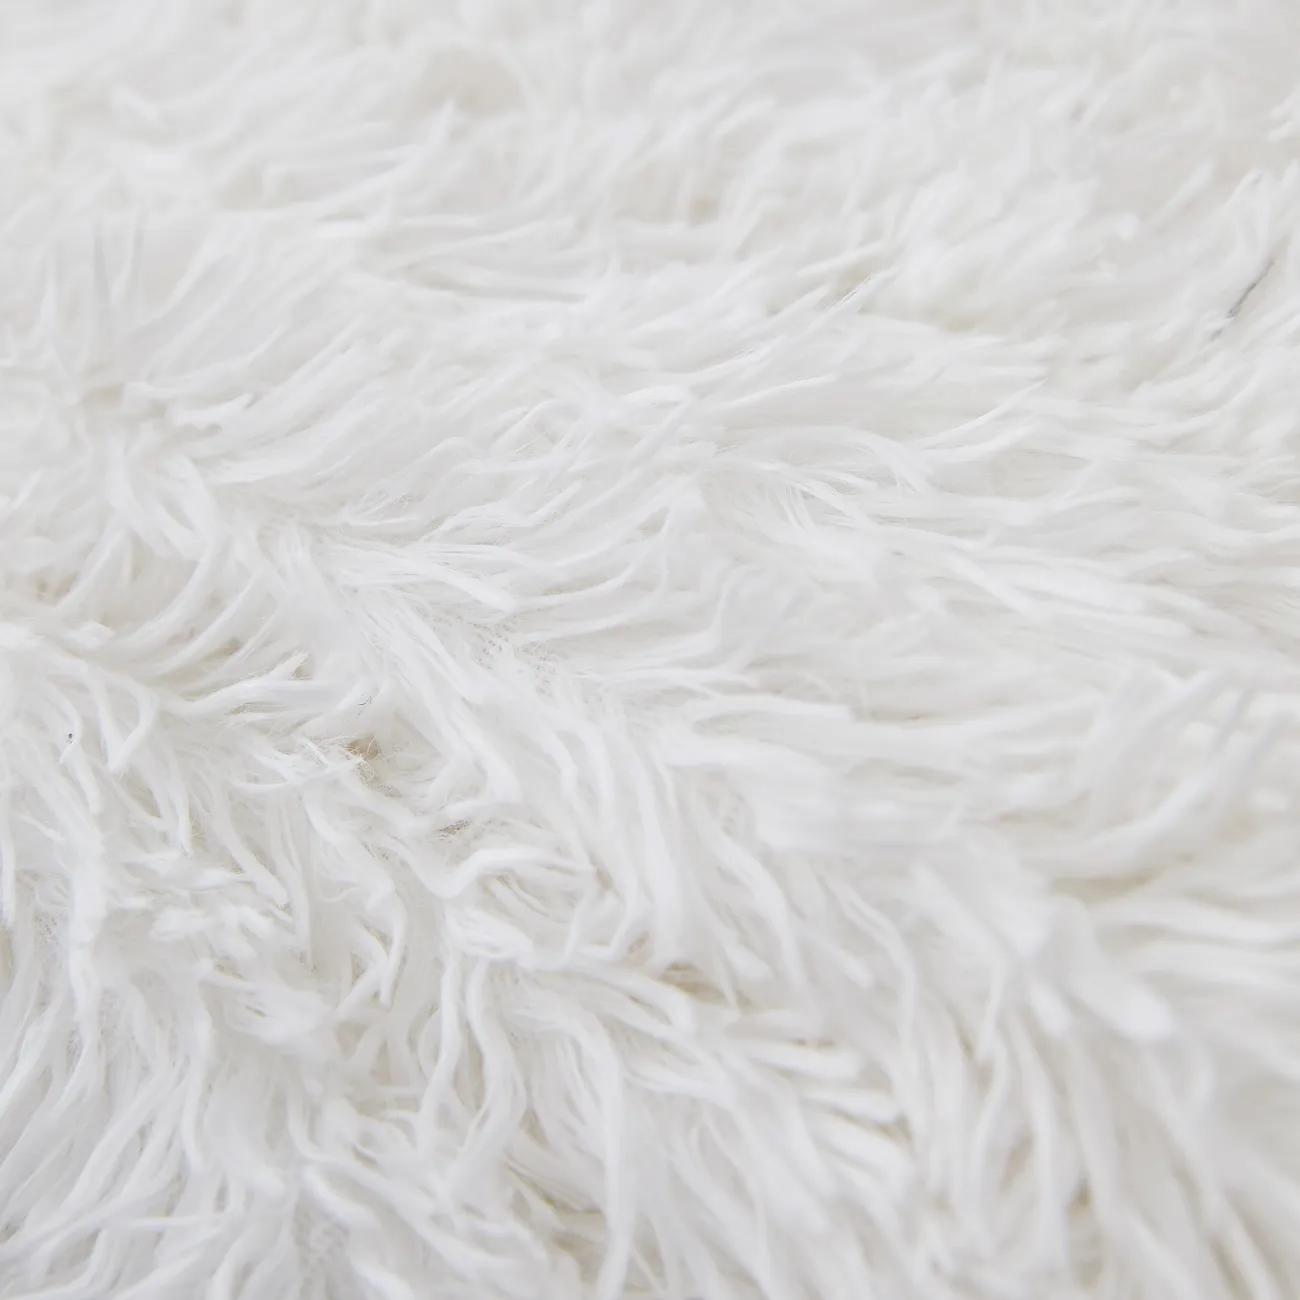 優質白色 PV 羊毛毯 - 超柔軟、耐用、可機洗 - 非常適合居家舒適和時尚裝飾 白色 big image 1